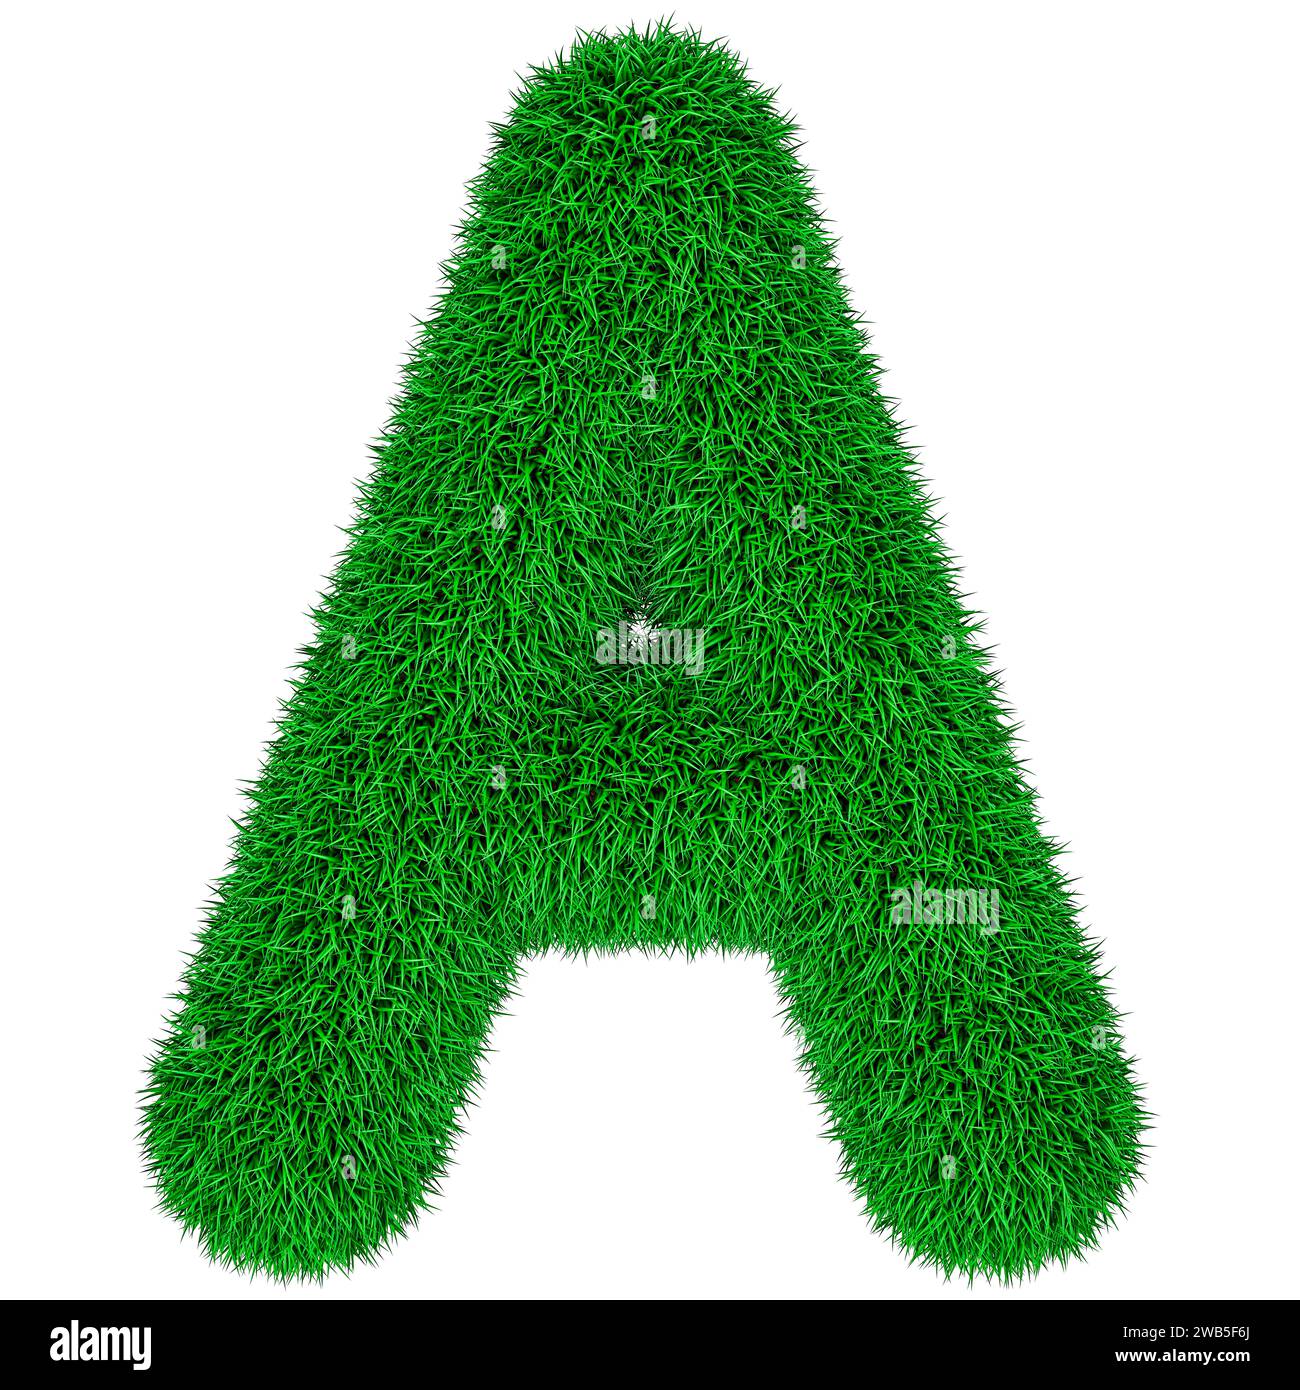 Vert herbe lettre A, rendu 3D isolé sur fond blanc Banque D'Images